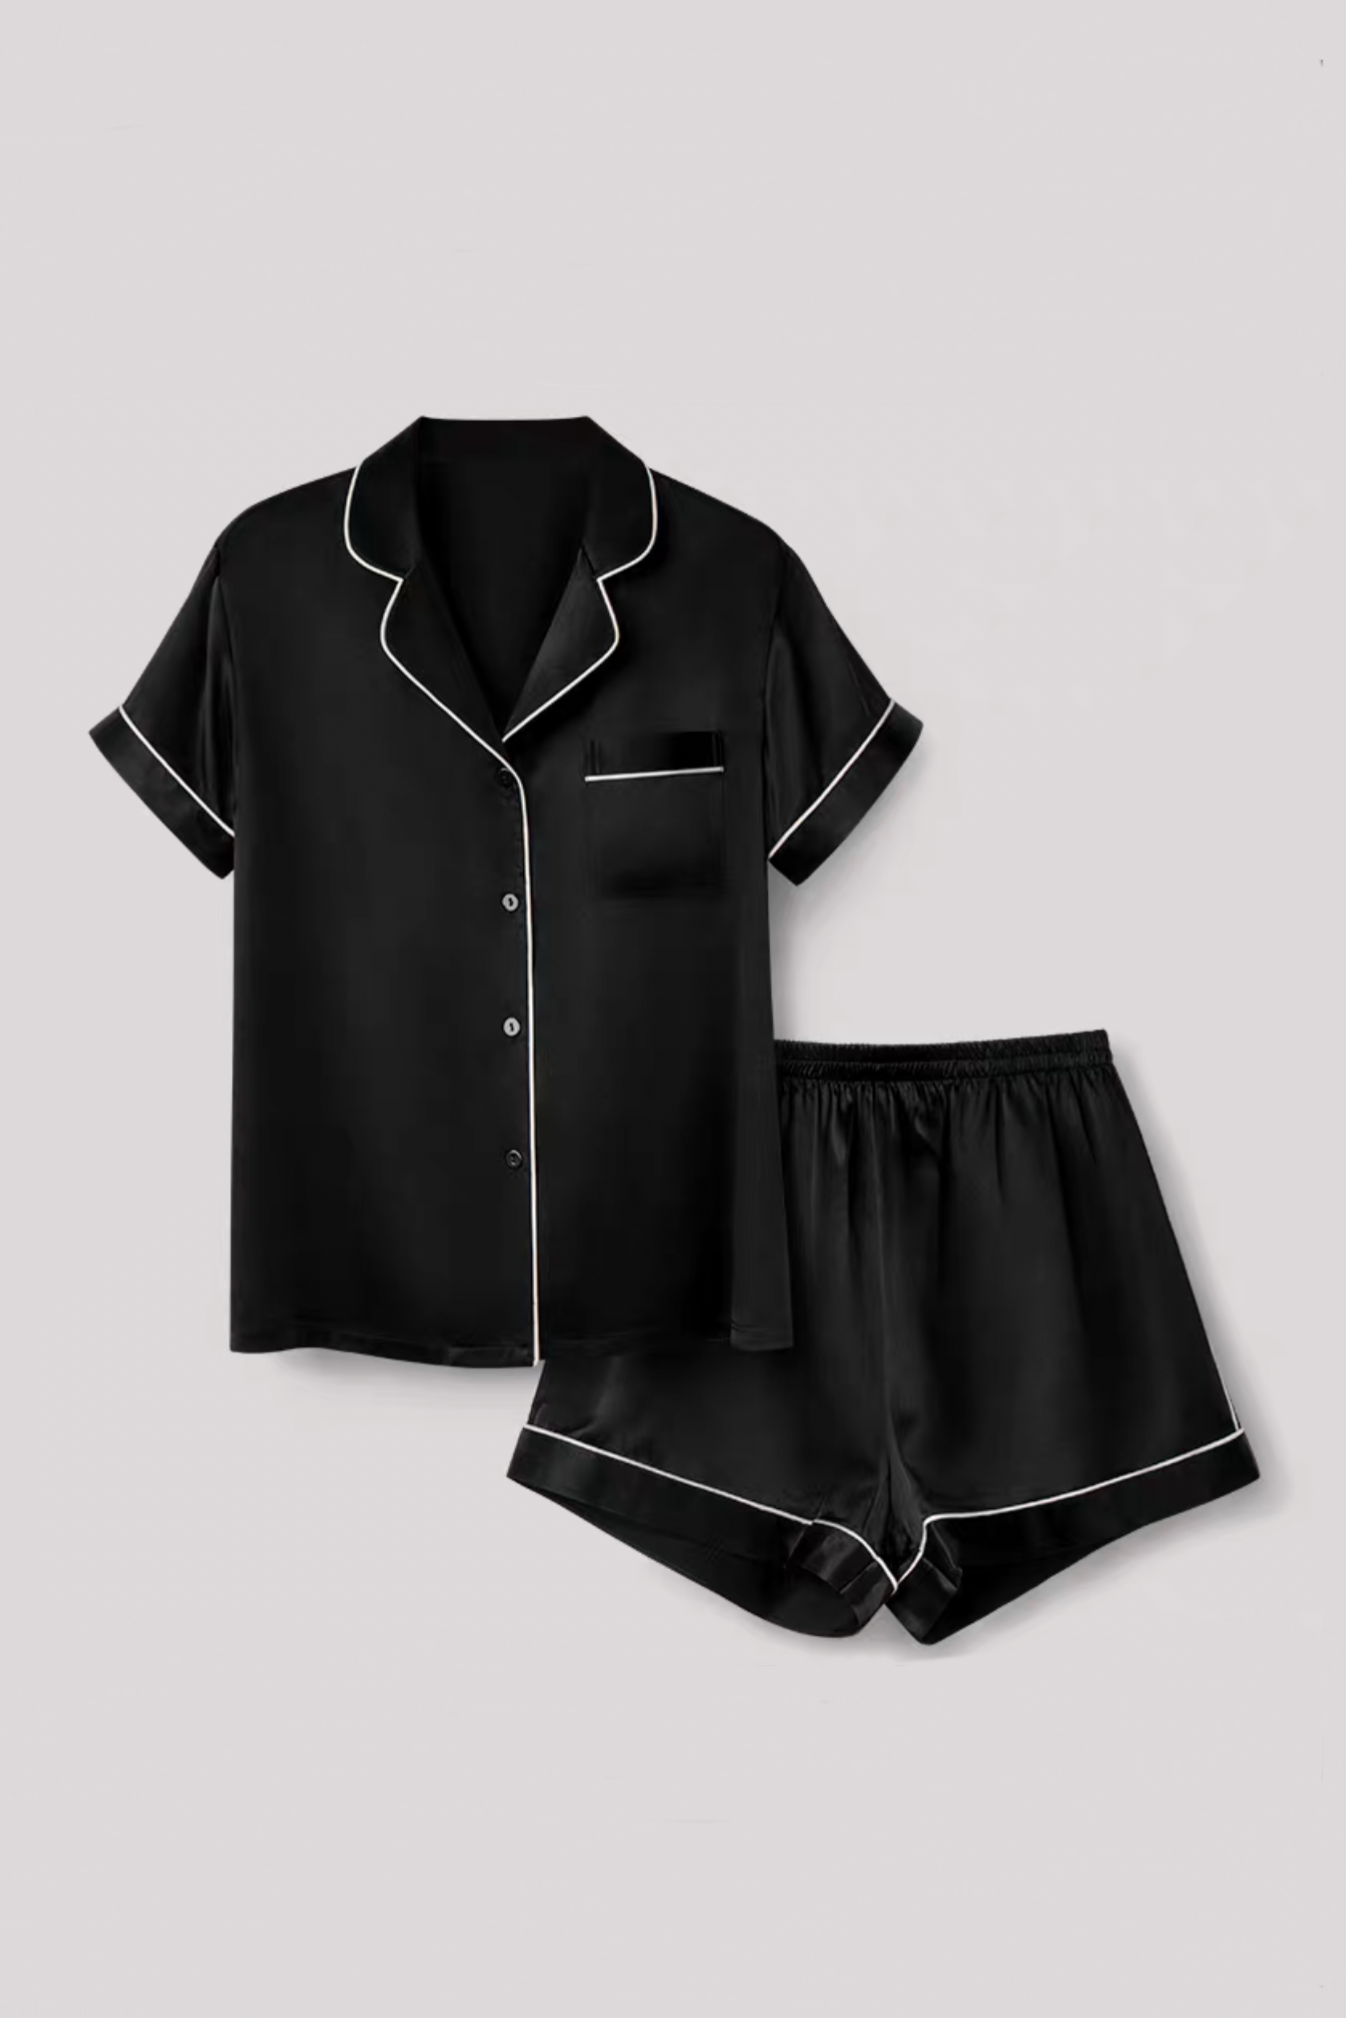 Mulberry Silk Short Pyjamas (Black)